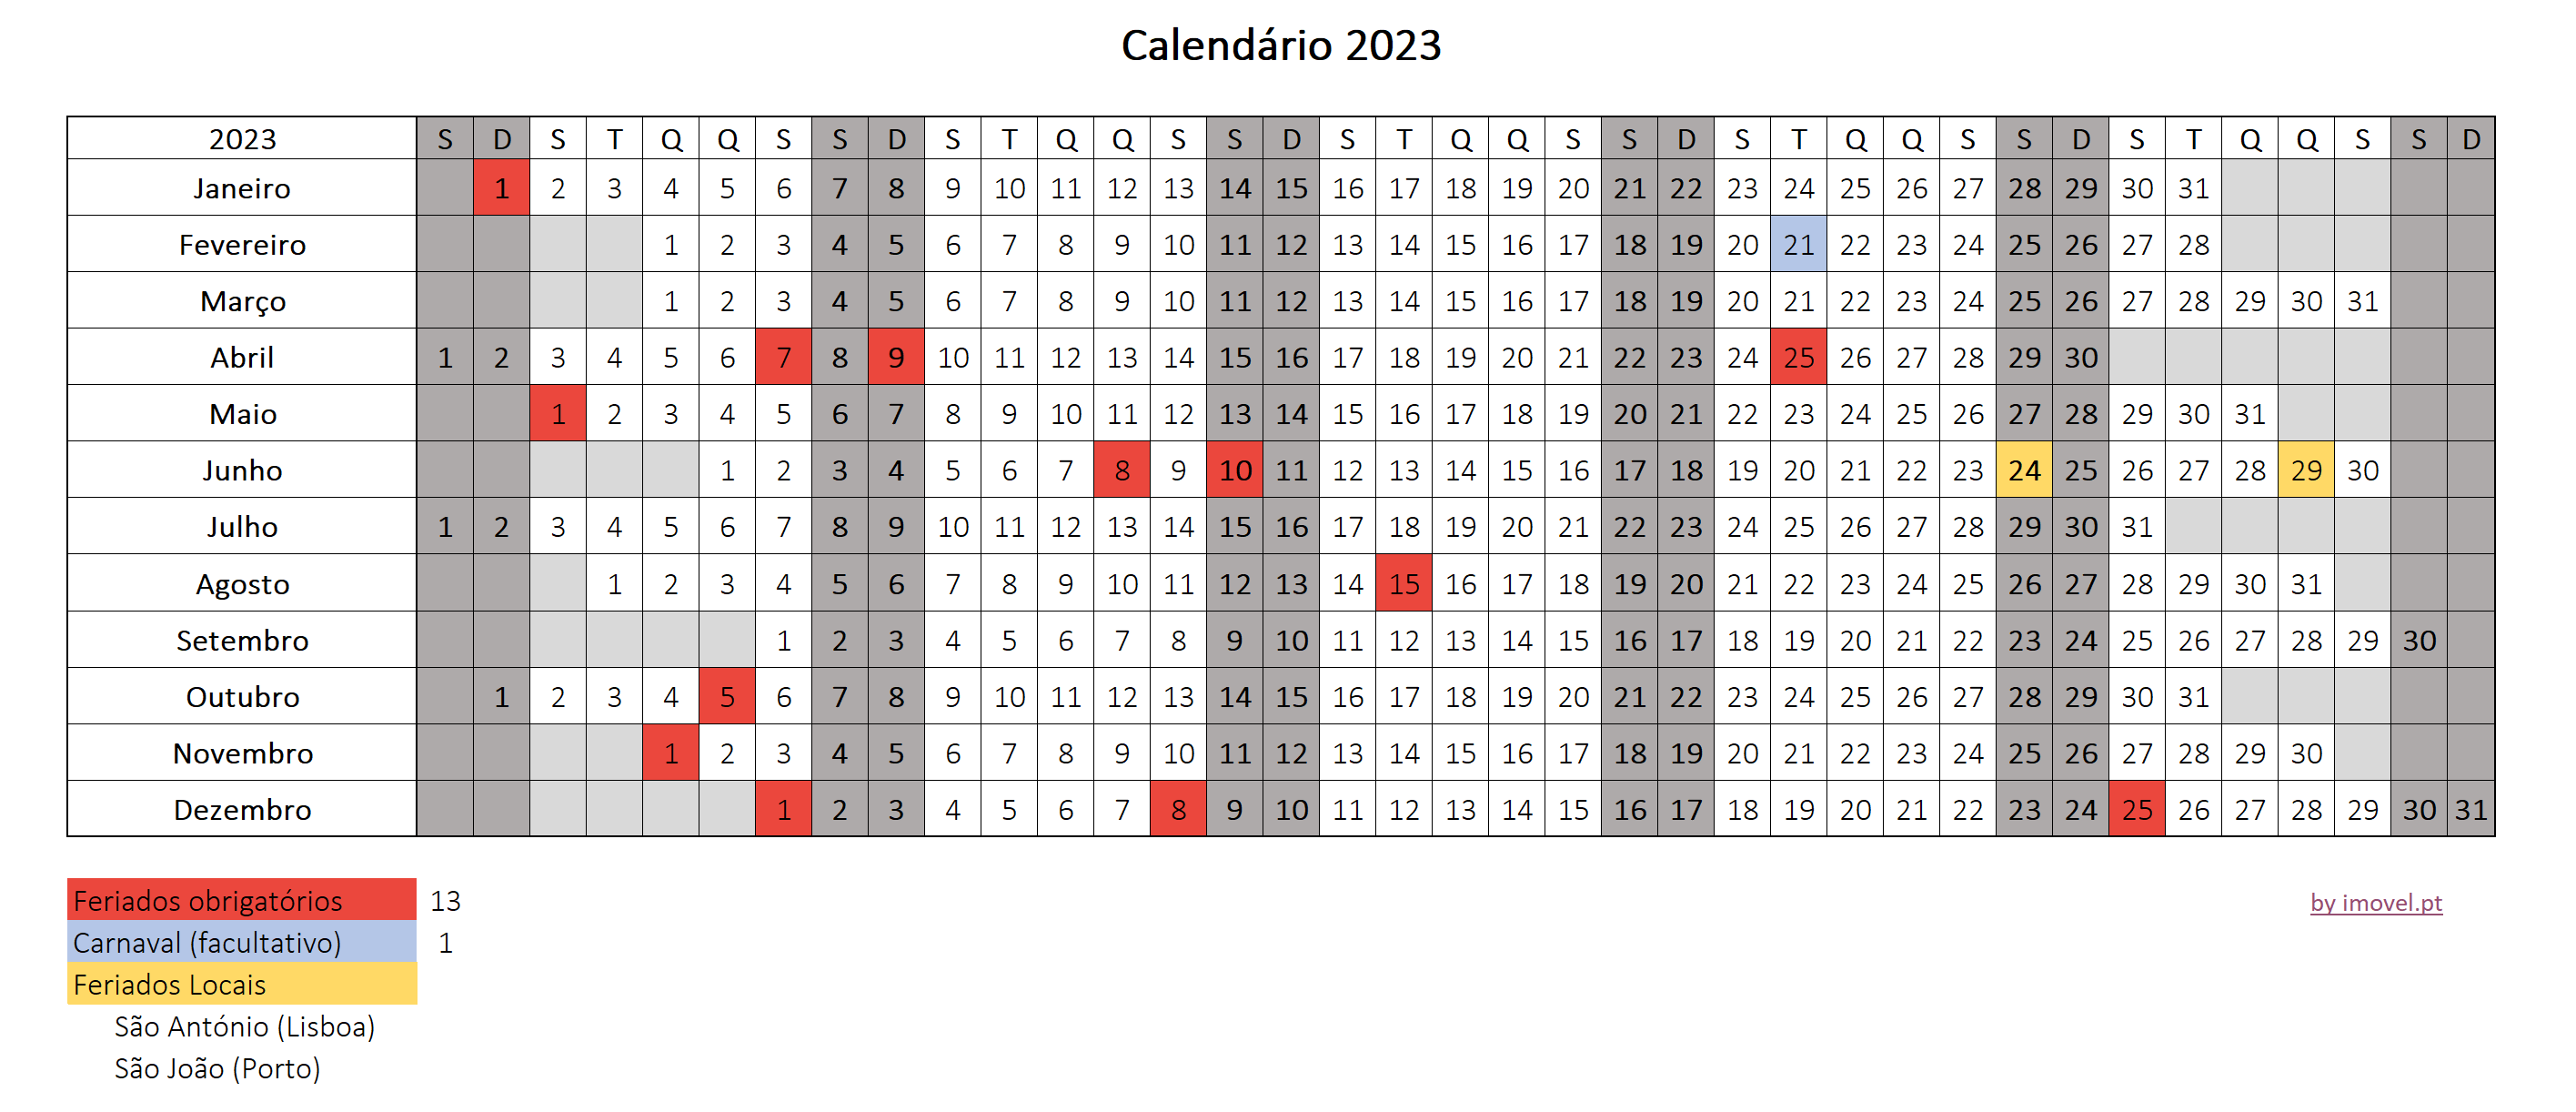 Excel Calendario 2023 Calendário 2023: Feriados em Portugal + Excel para download